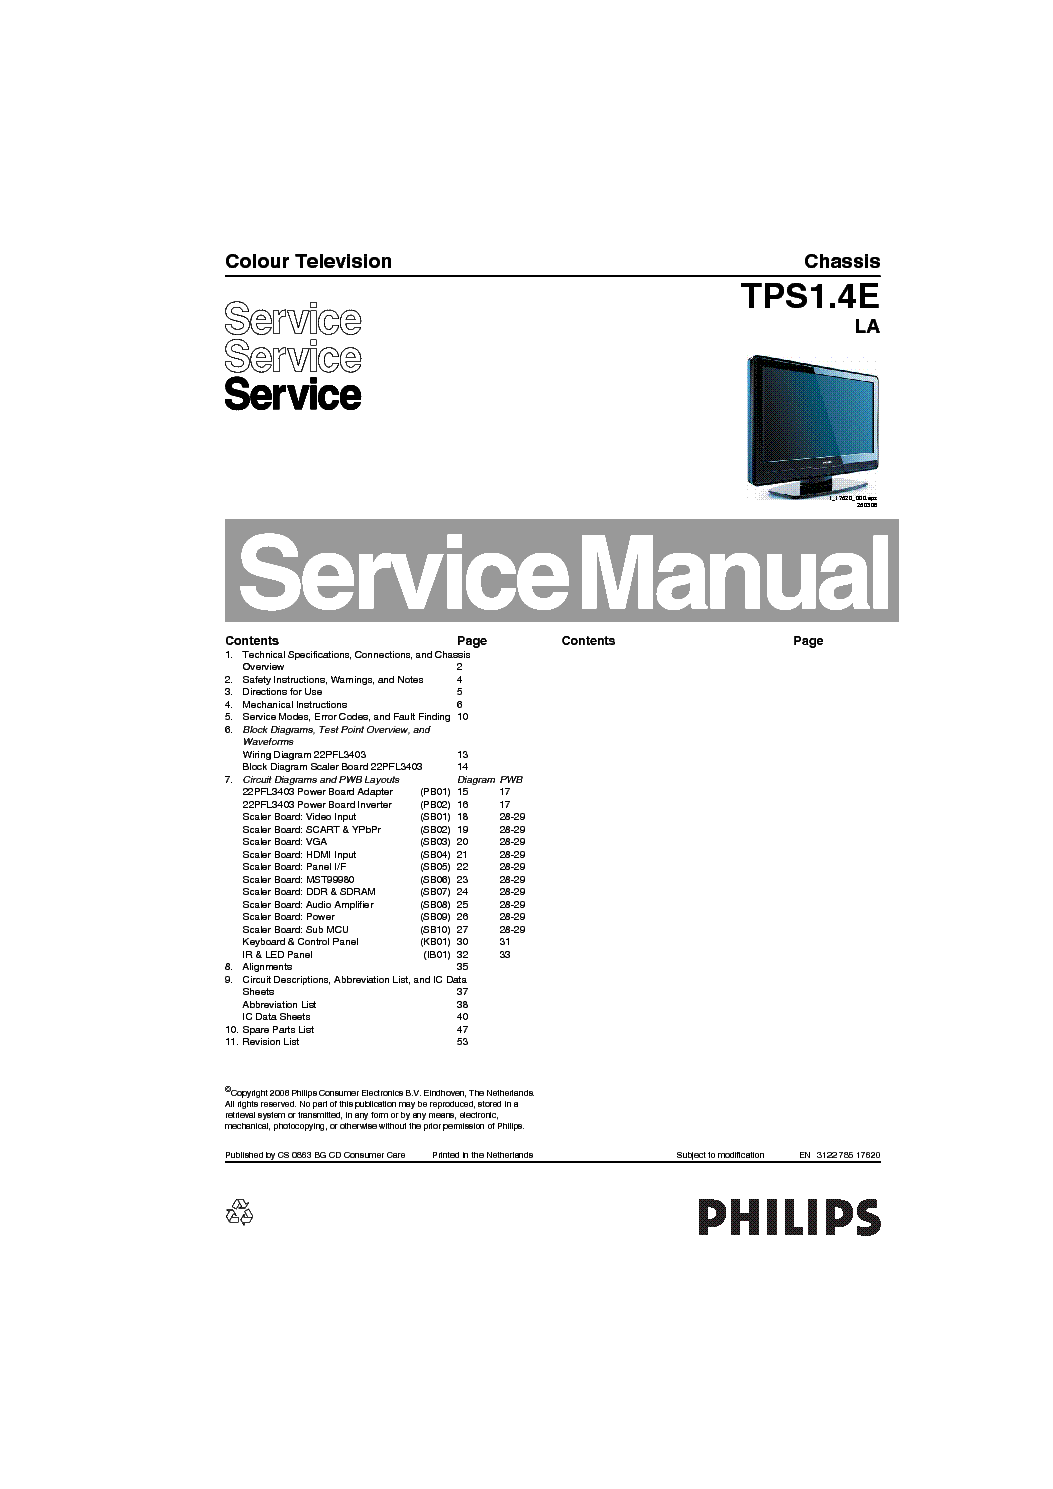 PHILIPS TPS1.4E-LA CHASSIS SM service manual (1st page)